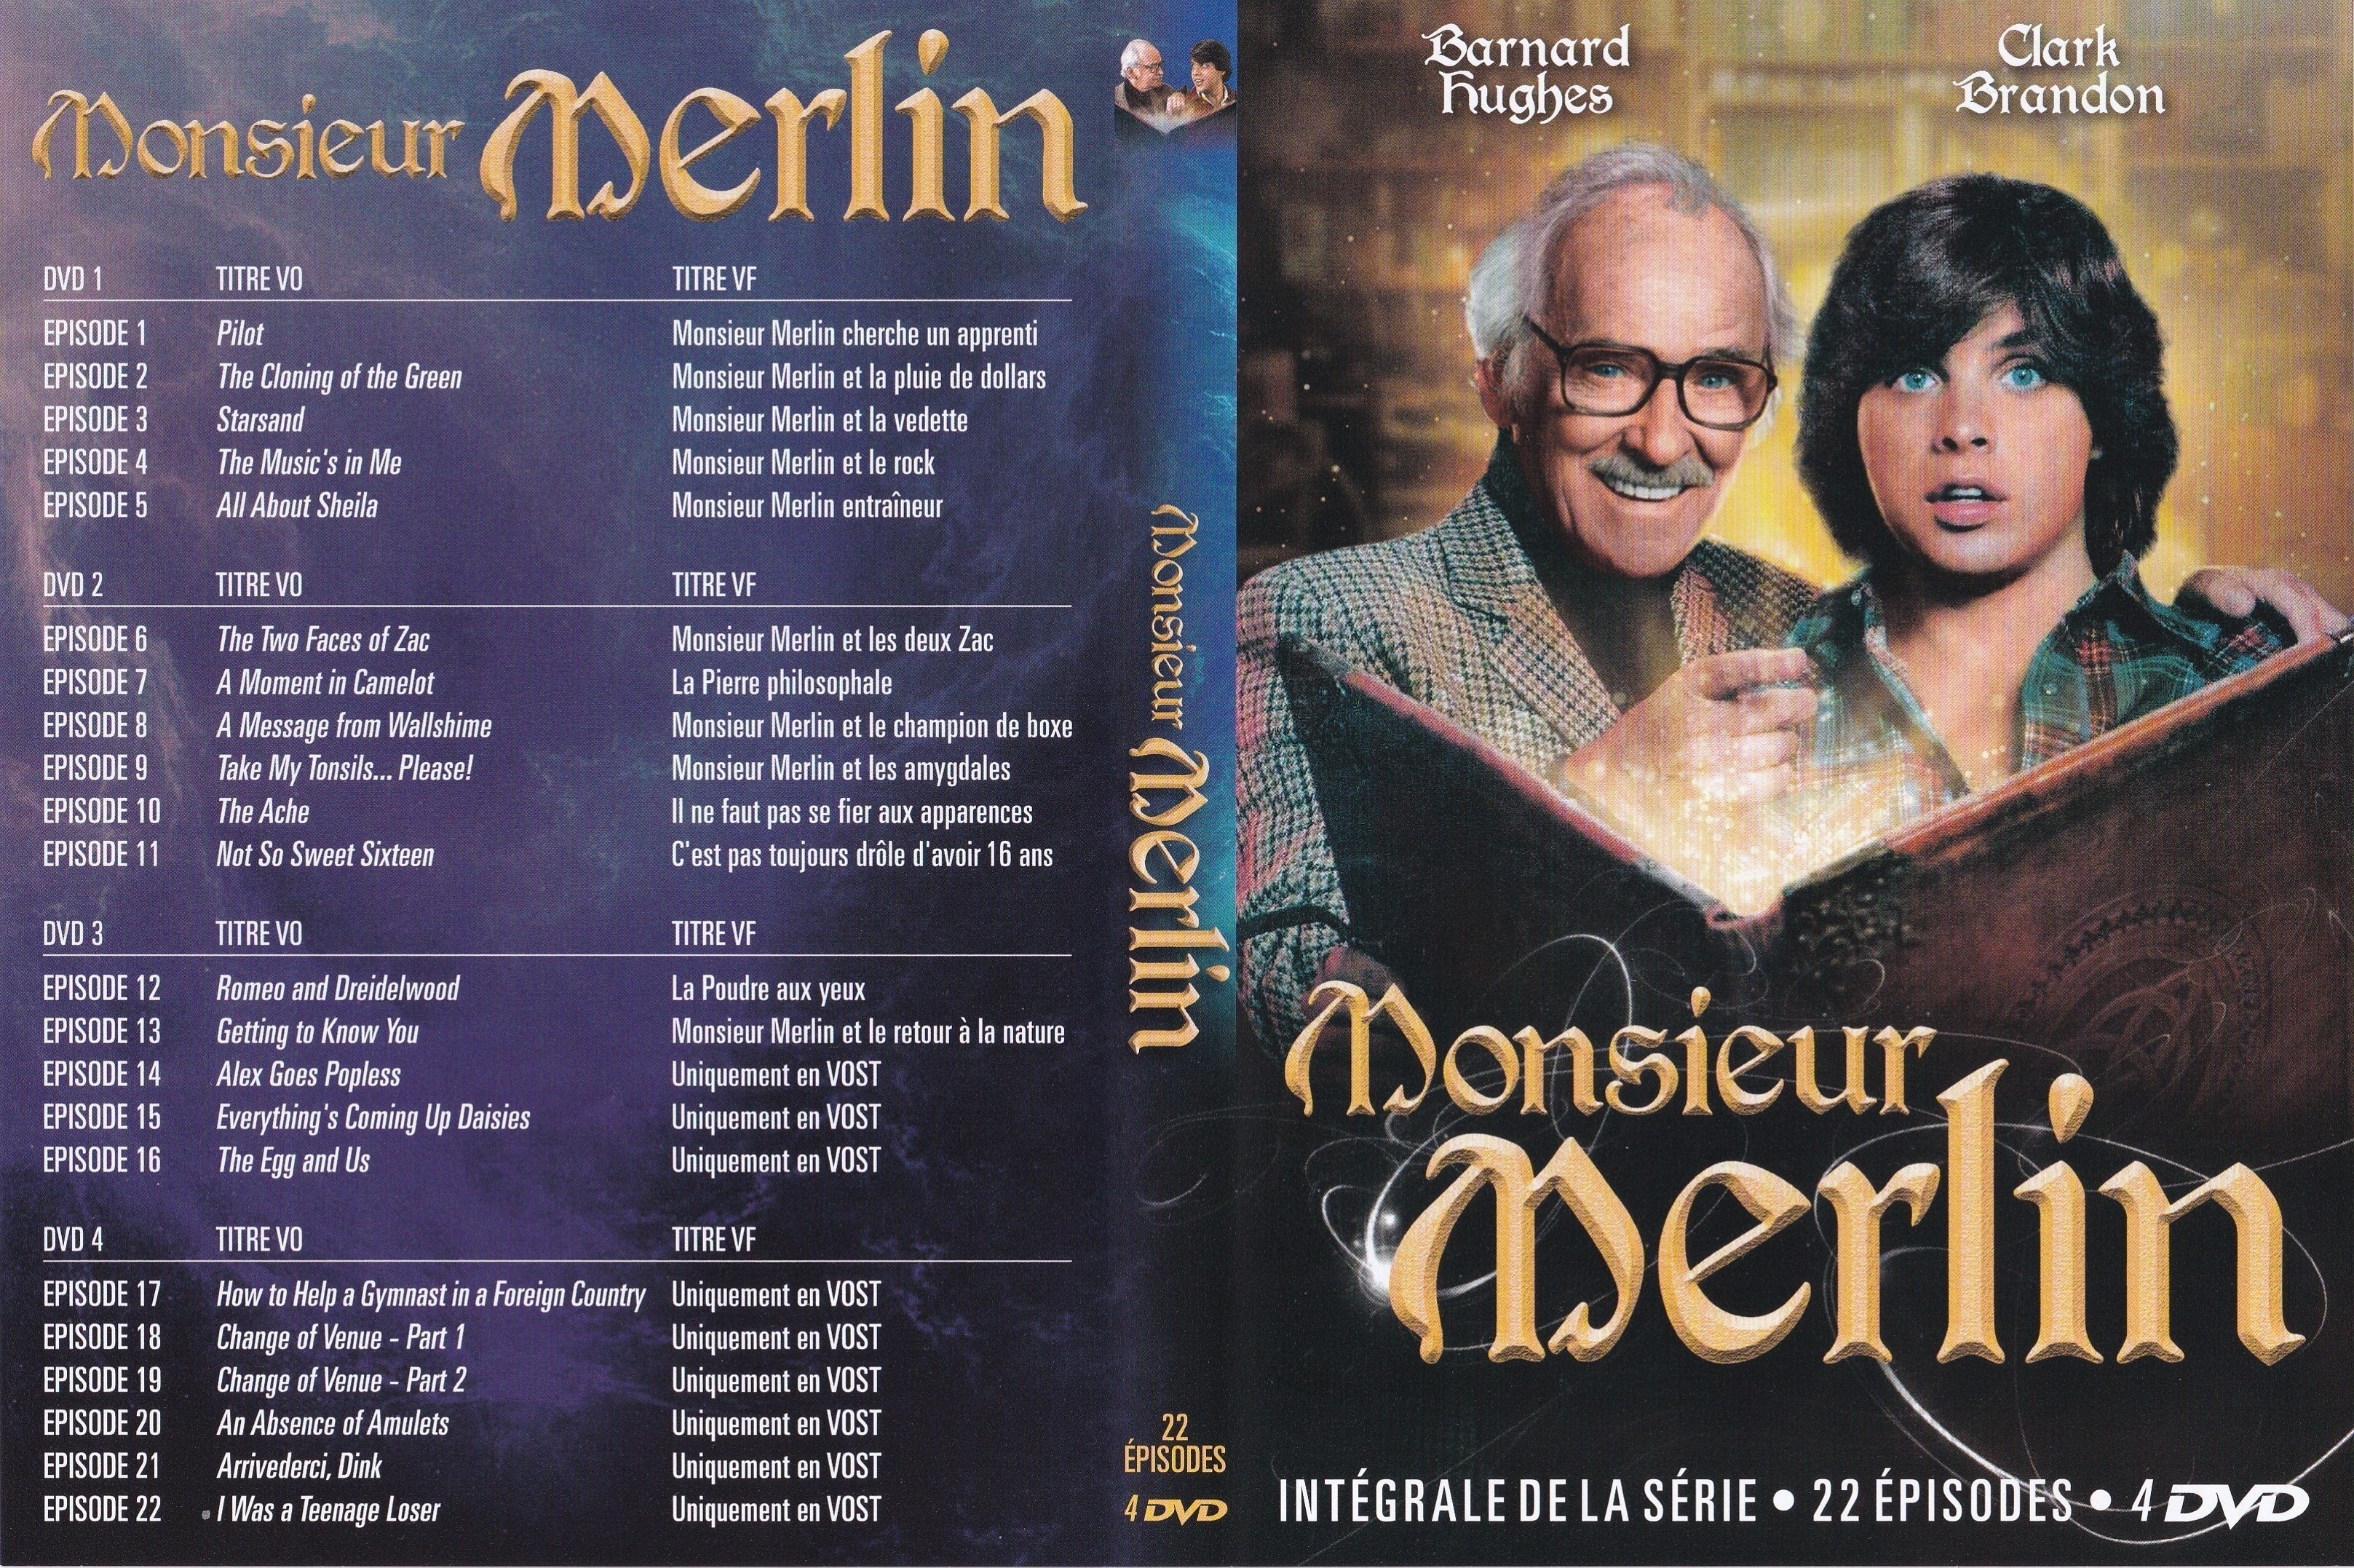 Jaquette DVD Monsieur Merlin v3